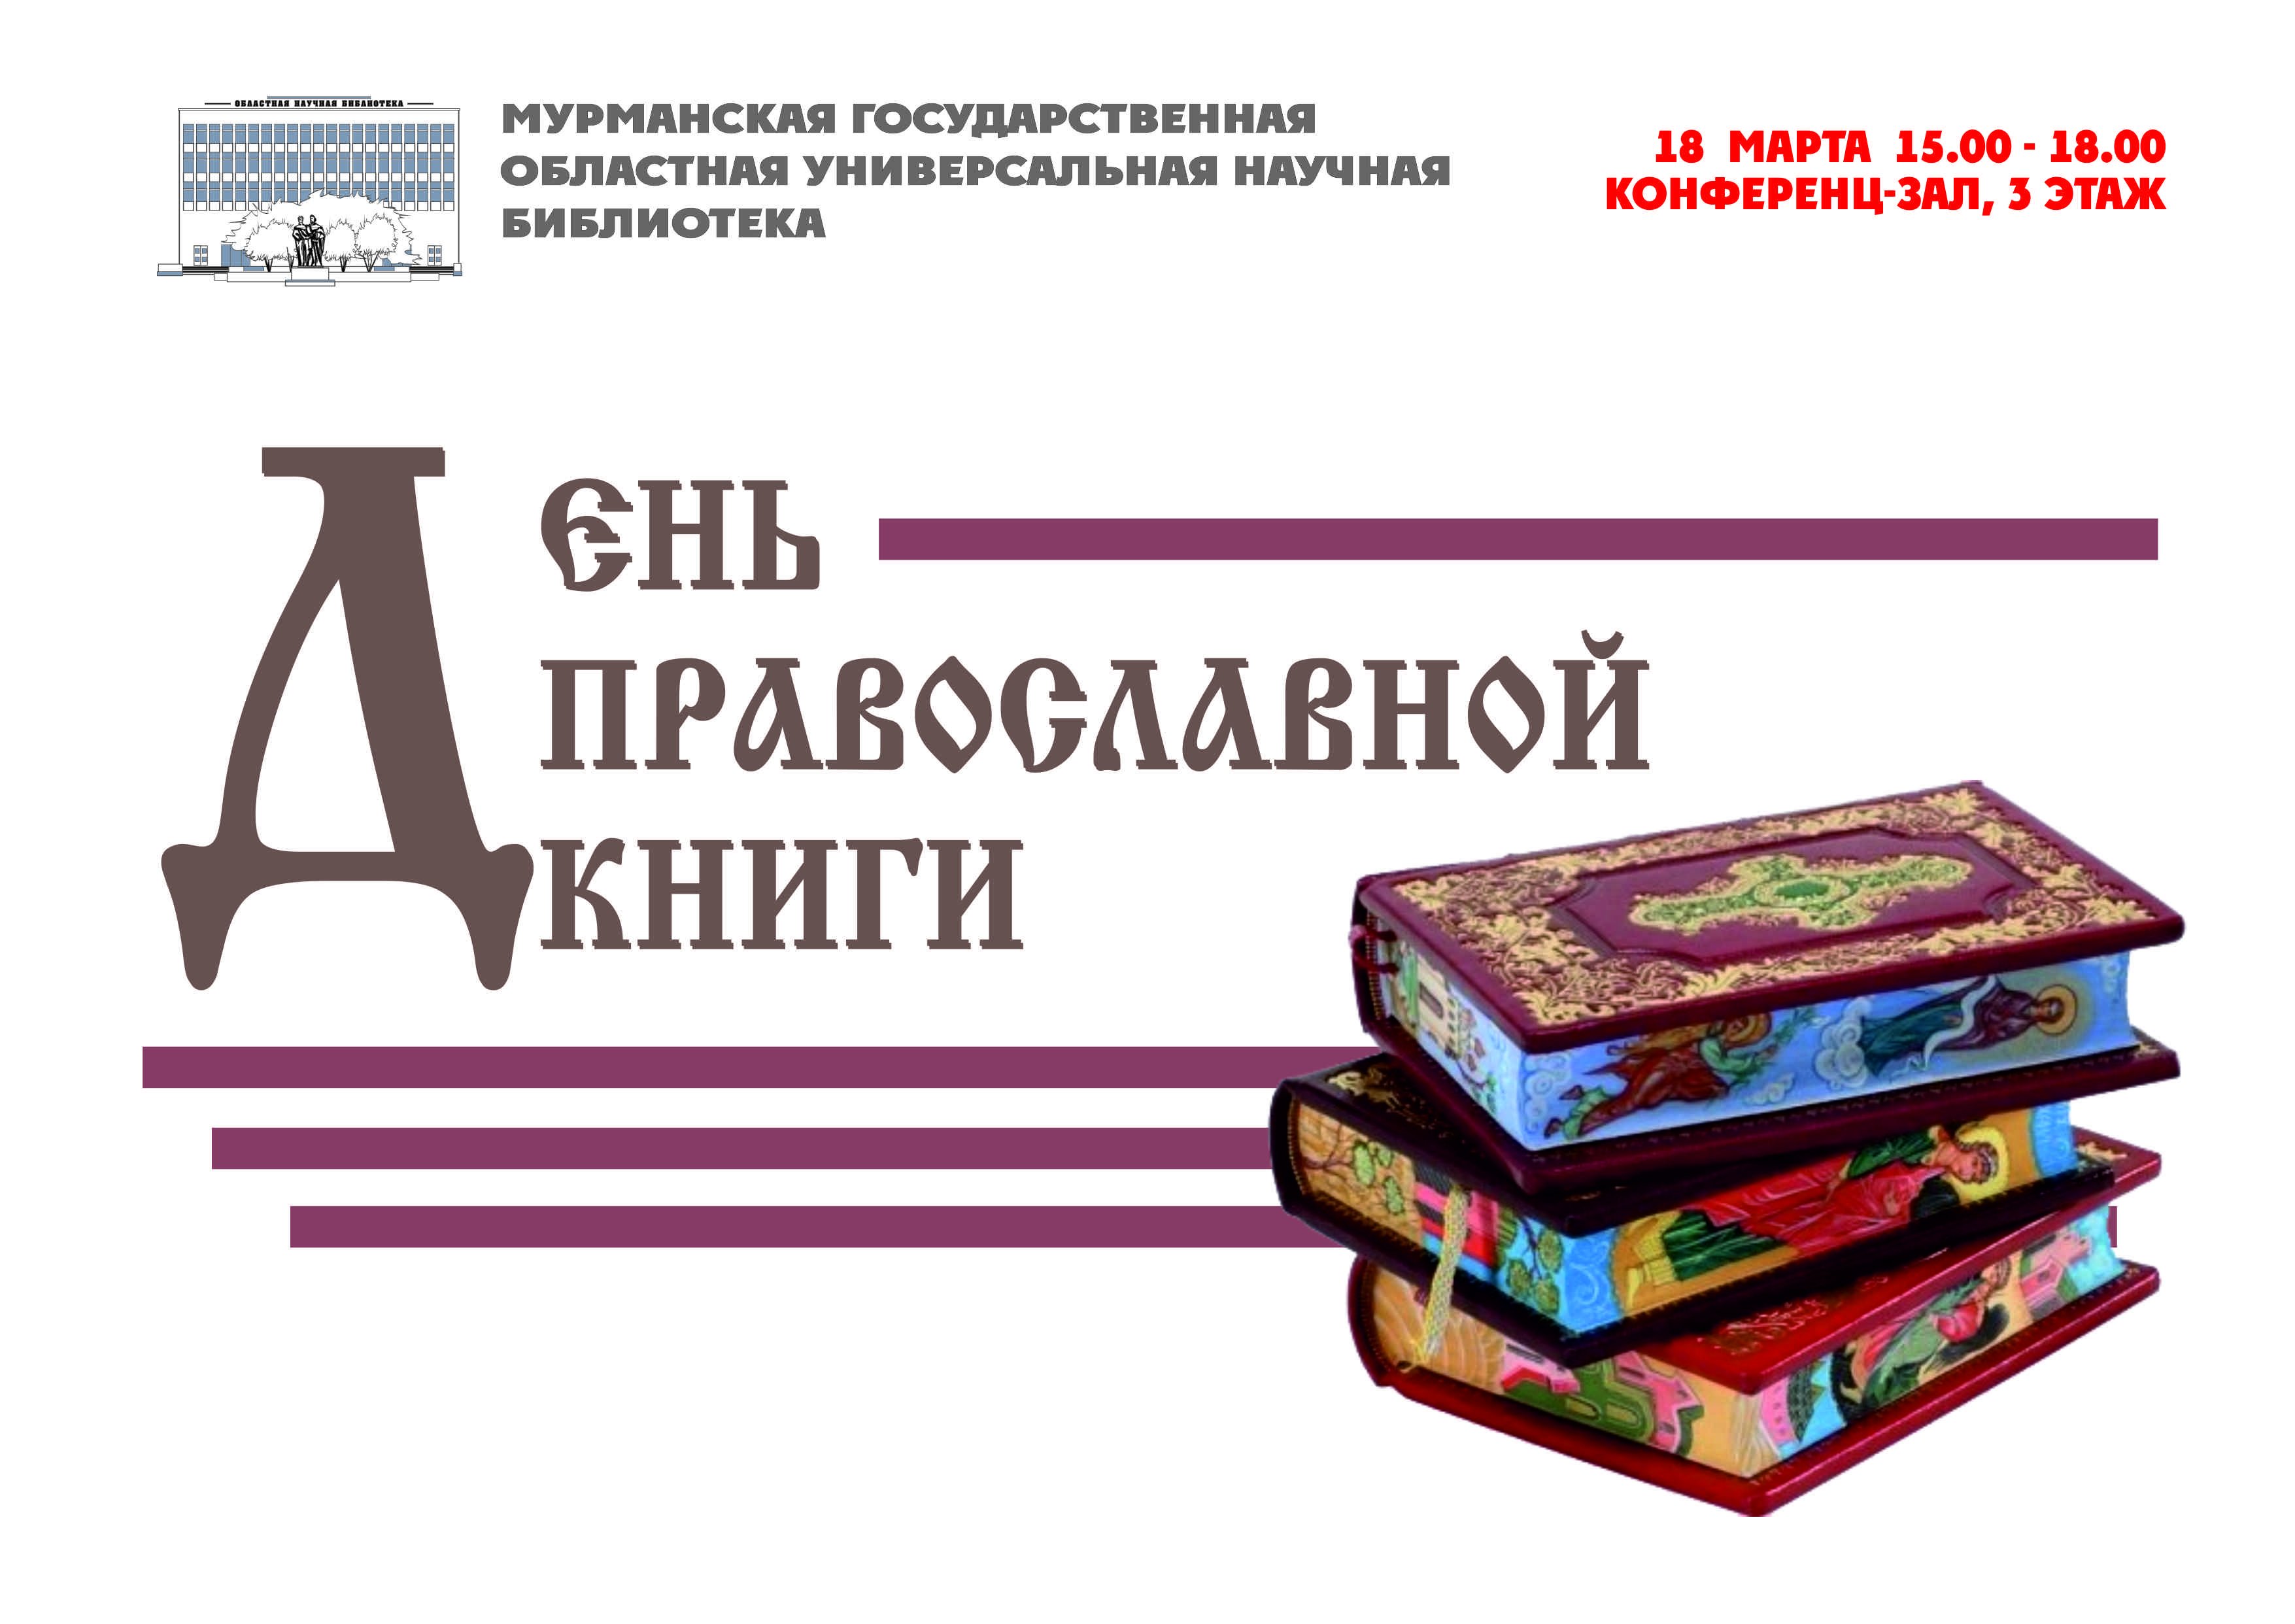 Название книги дата. Неделя православной книги. Книга православные праздники. День православной книги логотип.